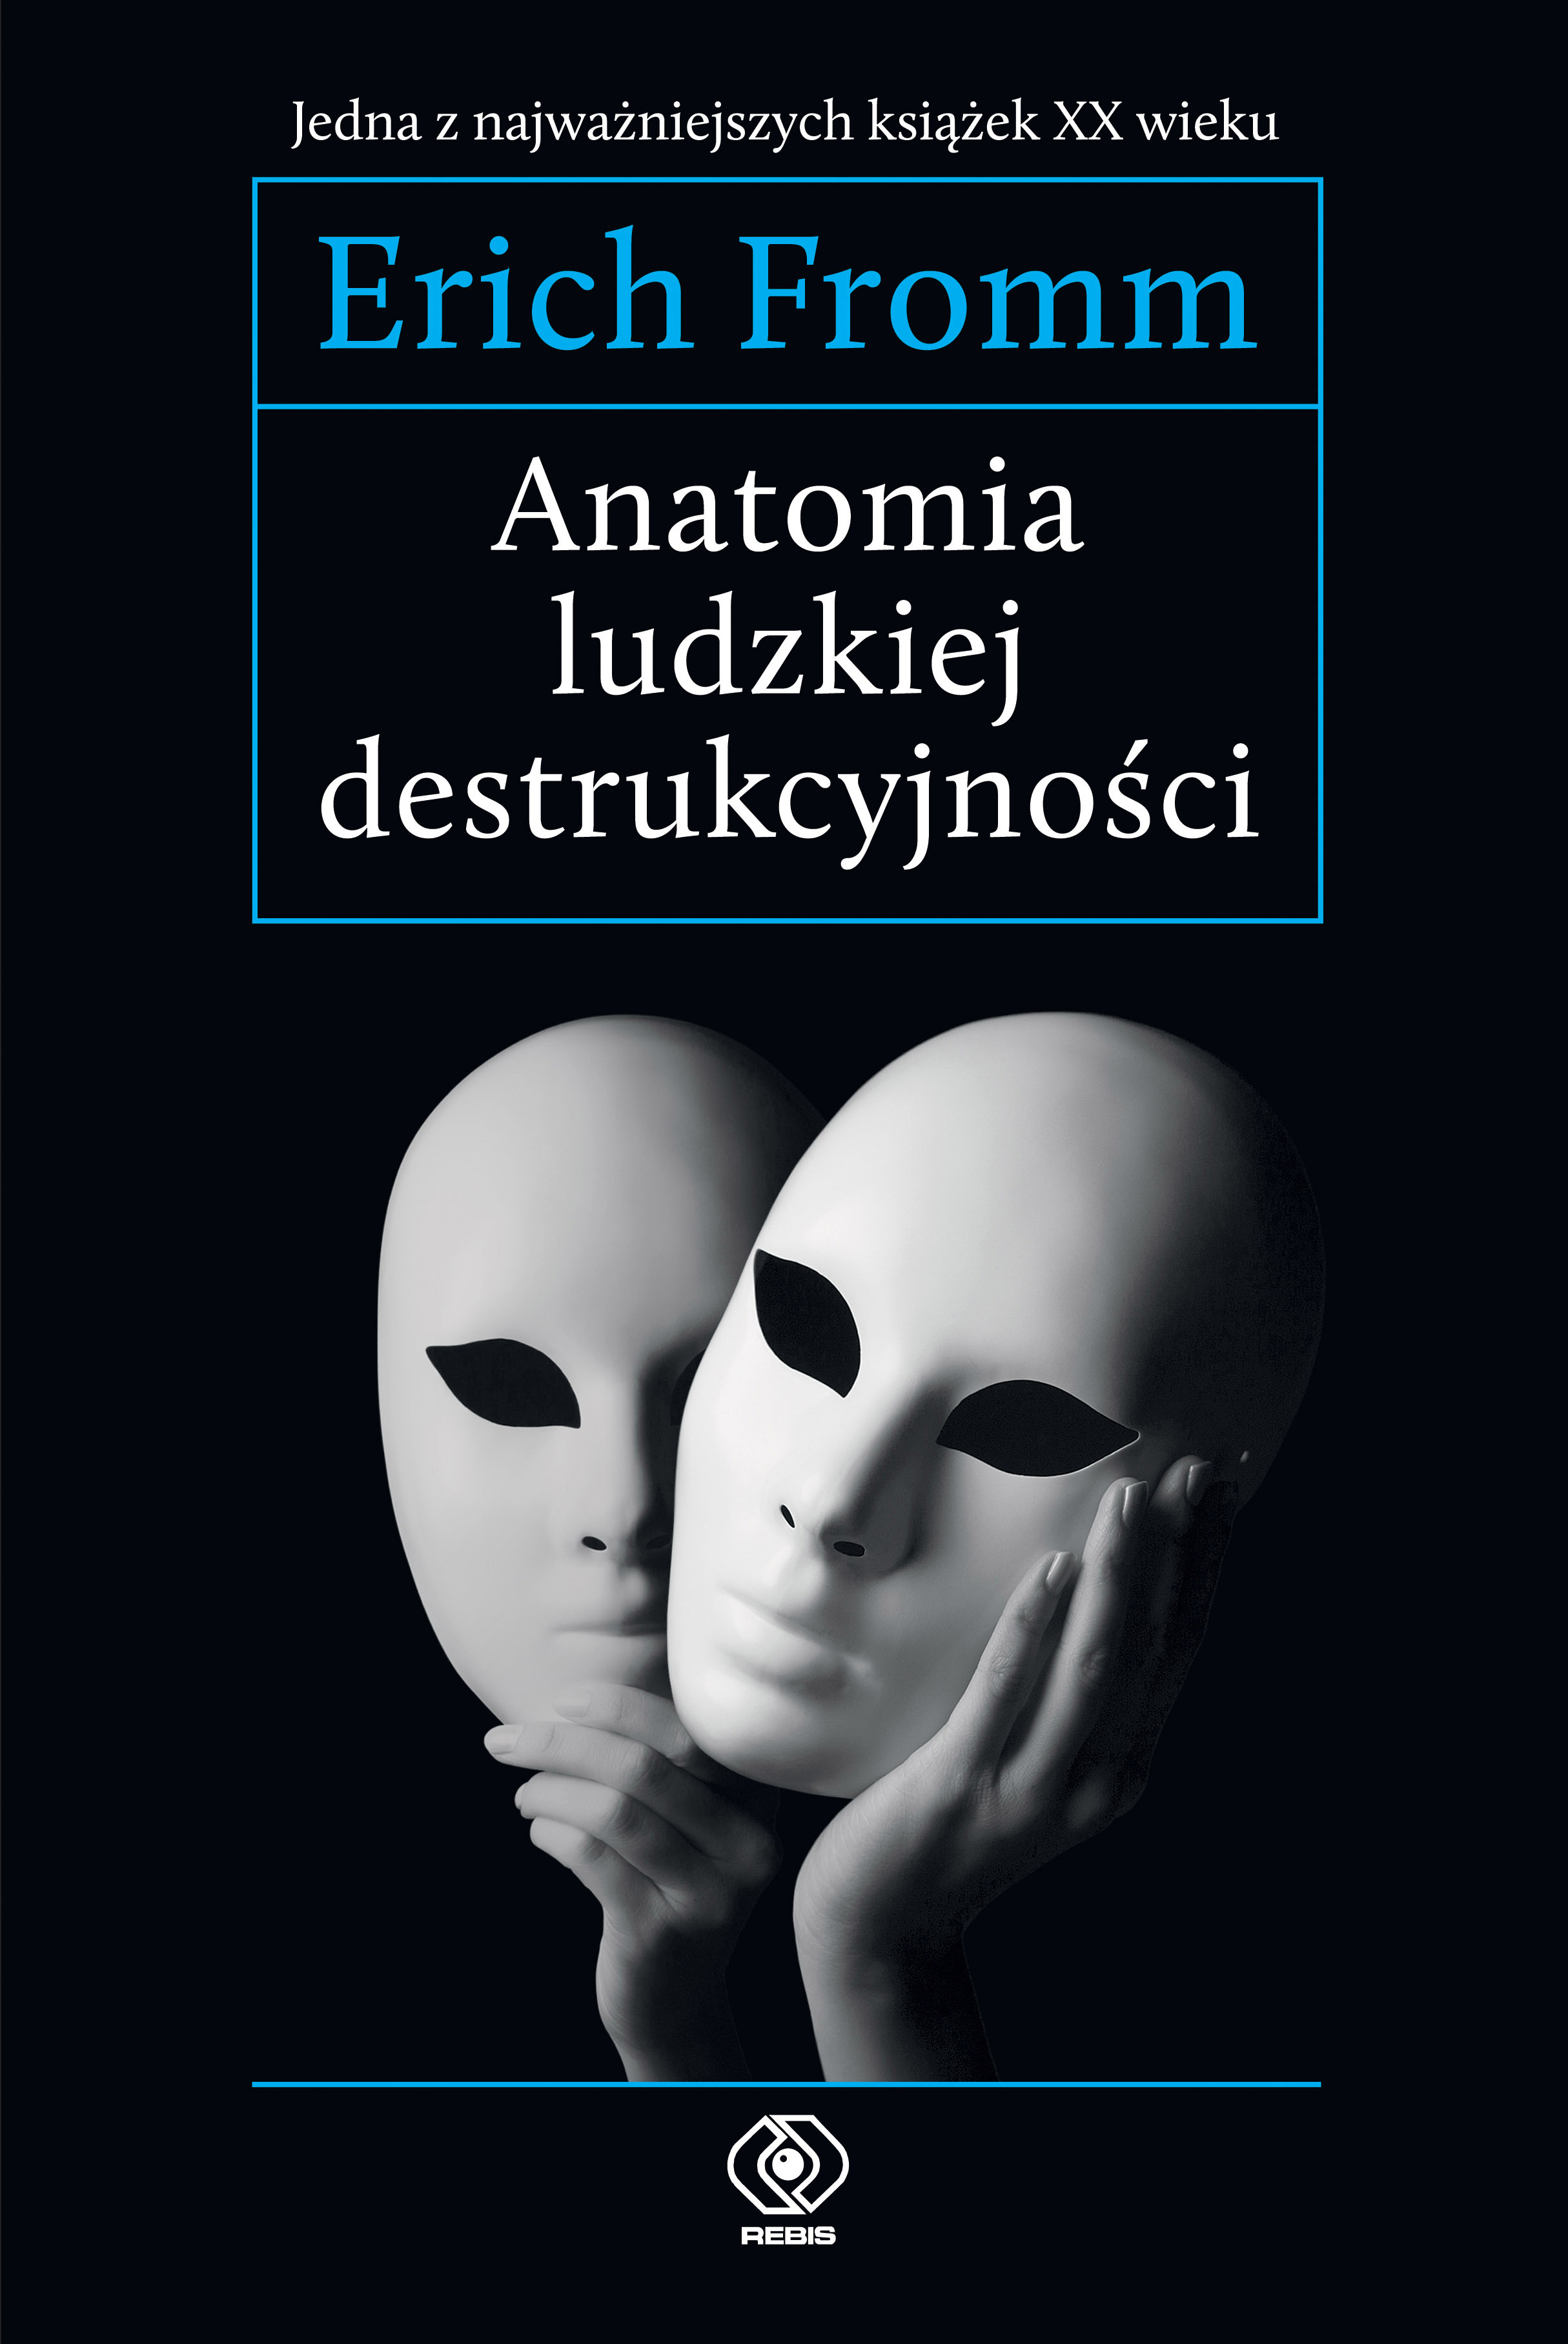 Erich Fromm, "Anatomia ludzkiej destrukcyjności" - nowe wydanie!